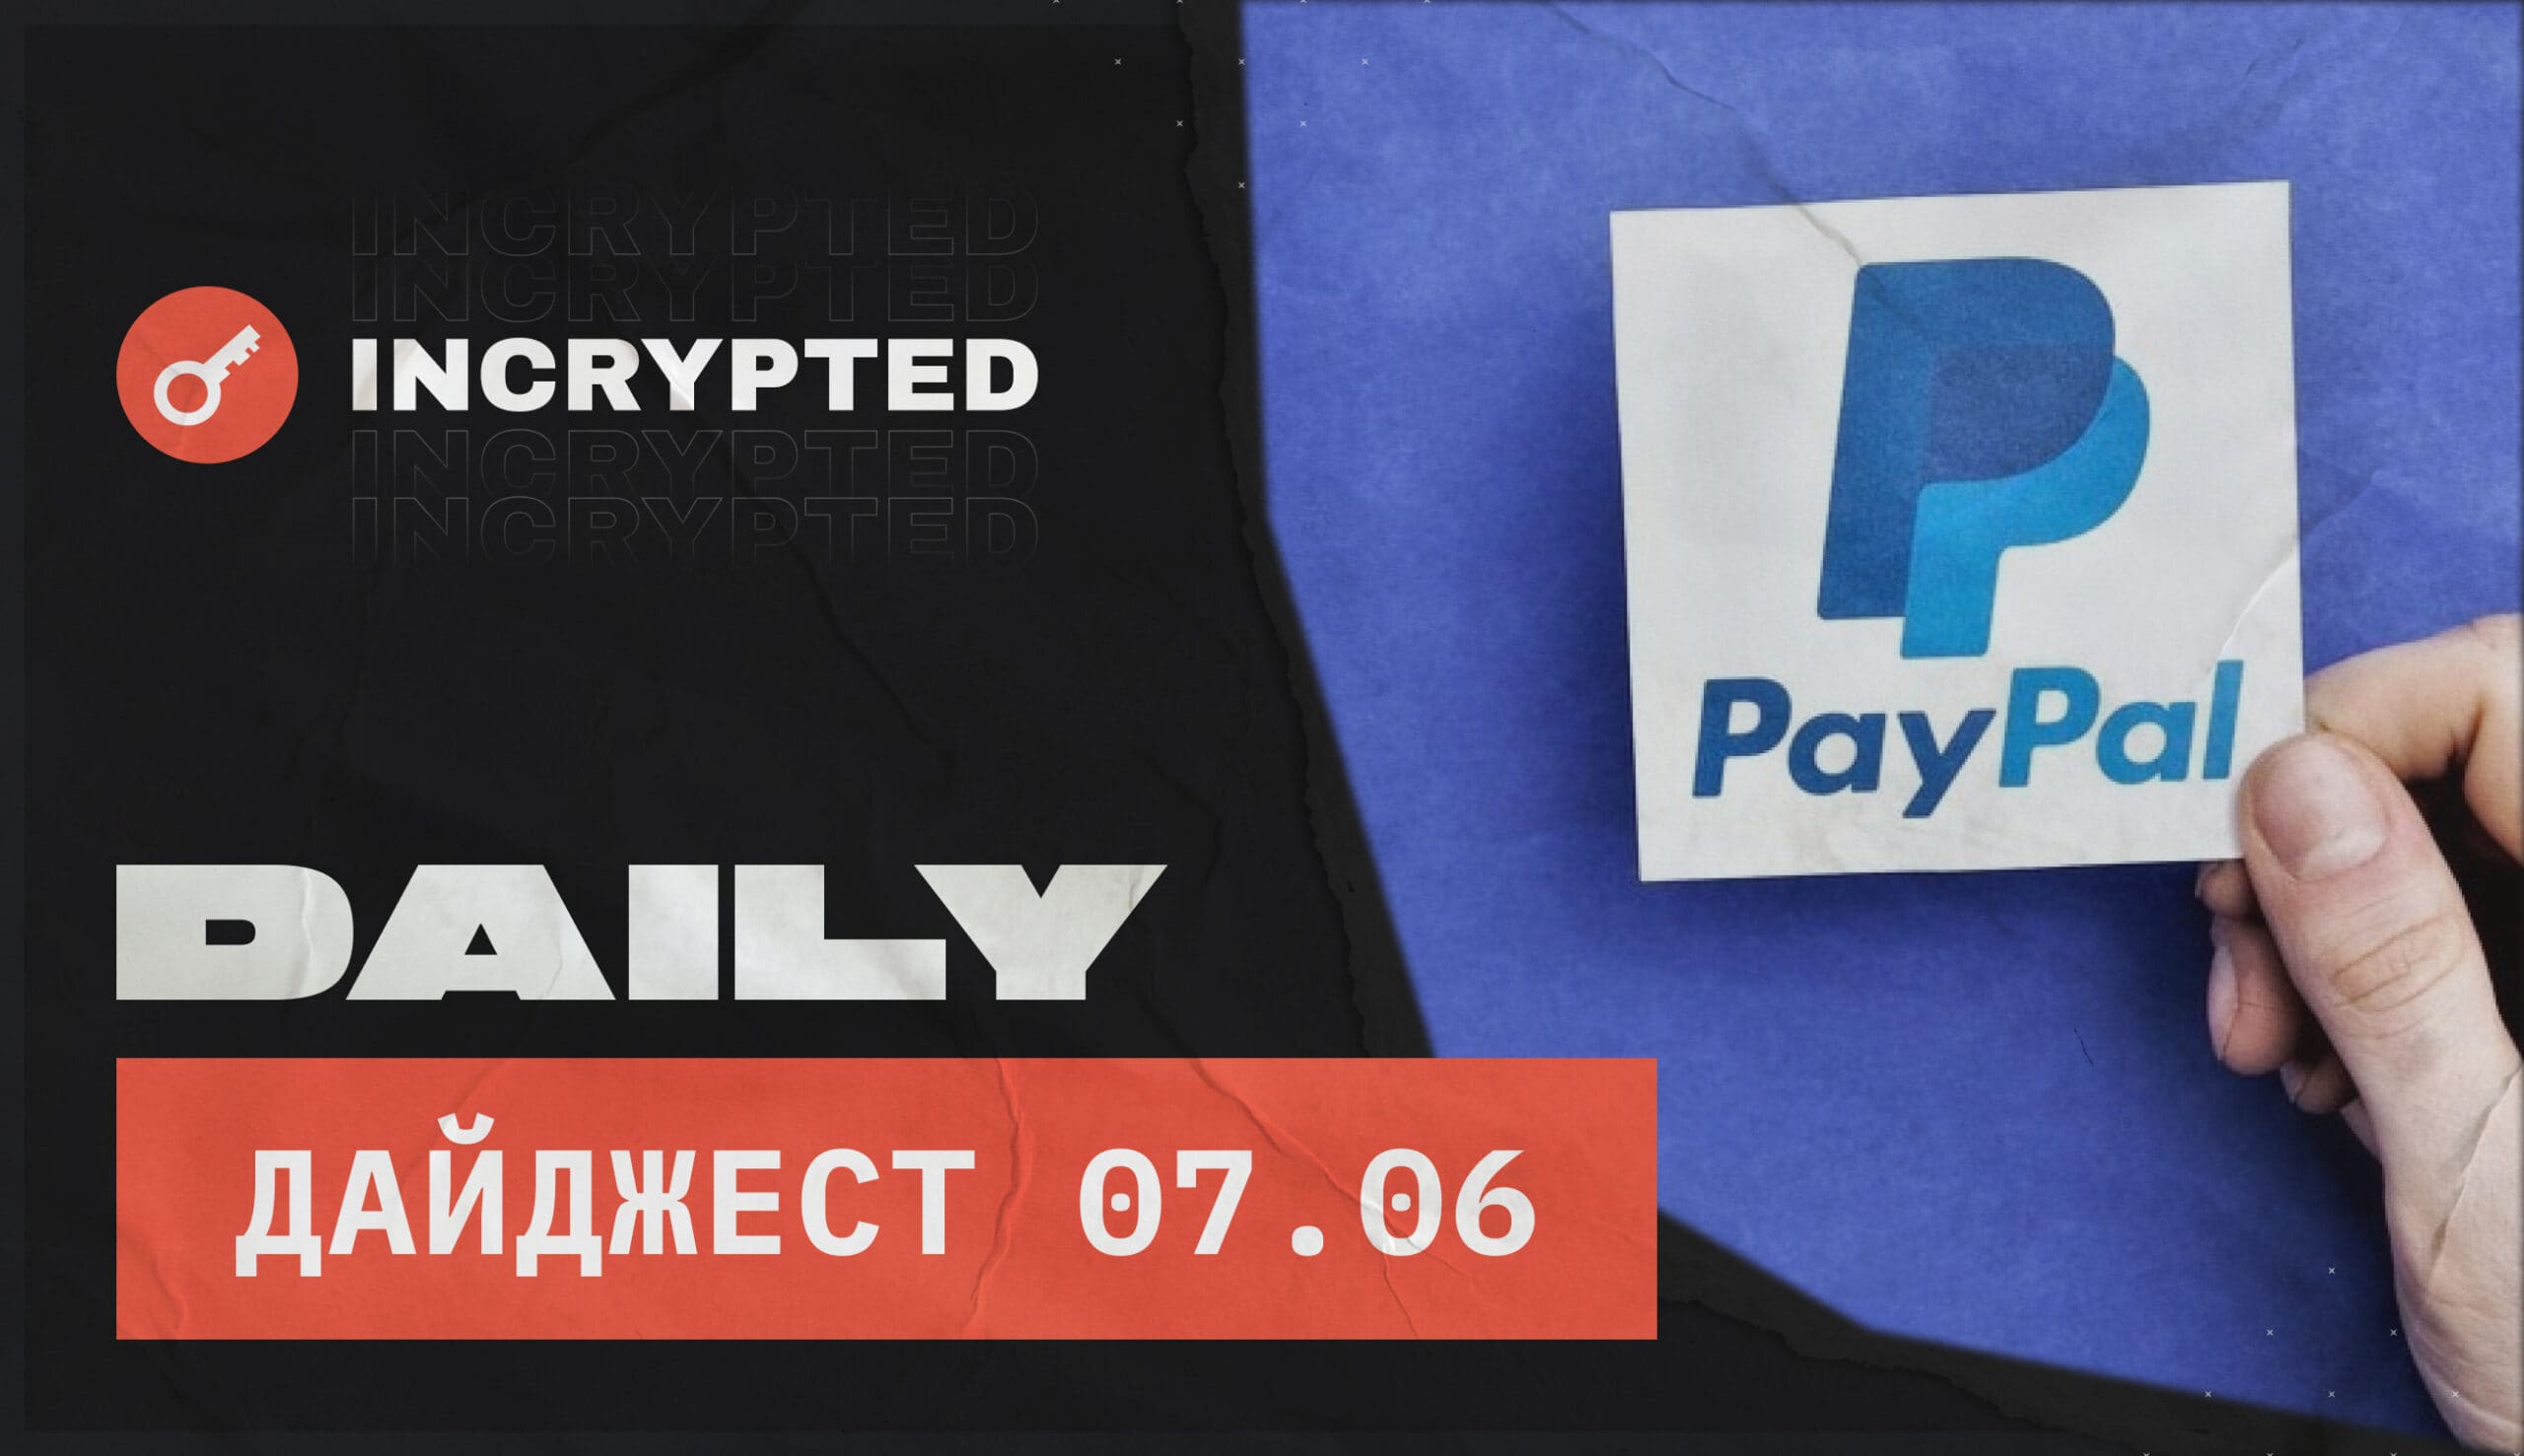 Daily: В PayPal появилась опция вывода криптовалюты на внешние кошельки. Заглавный коллаж новости.